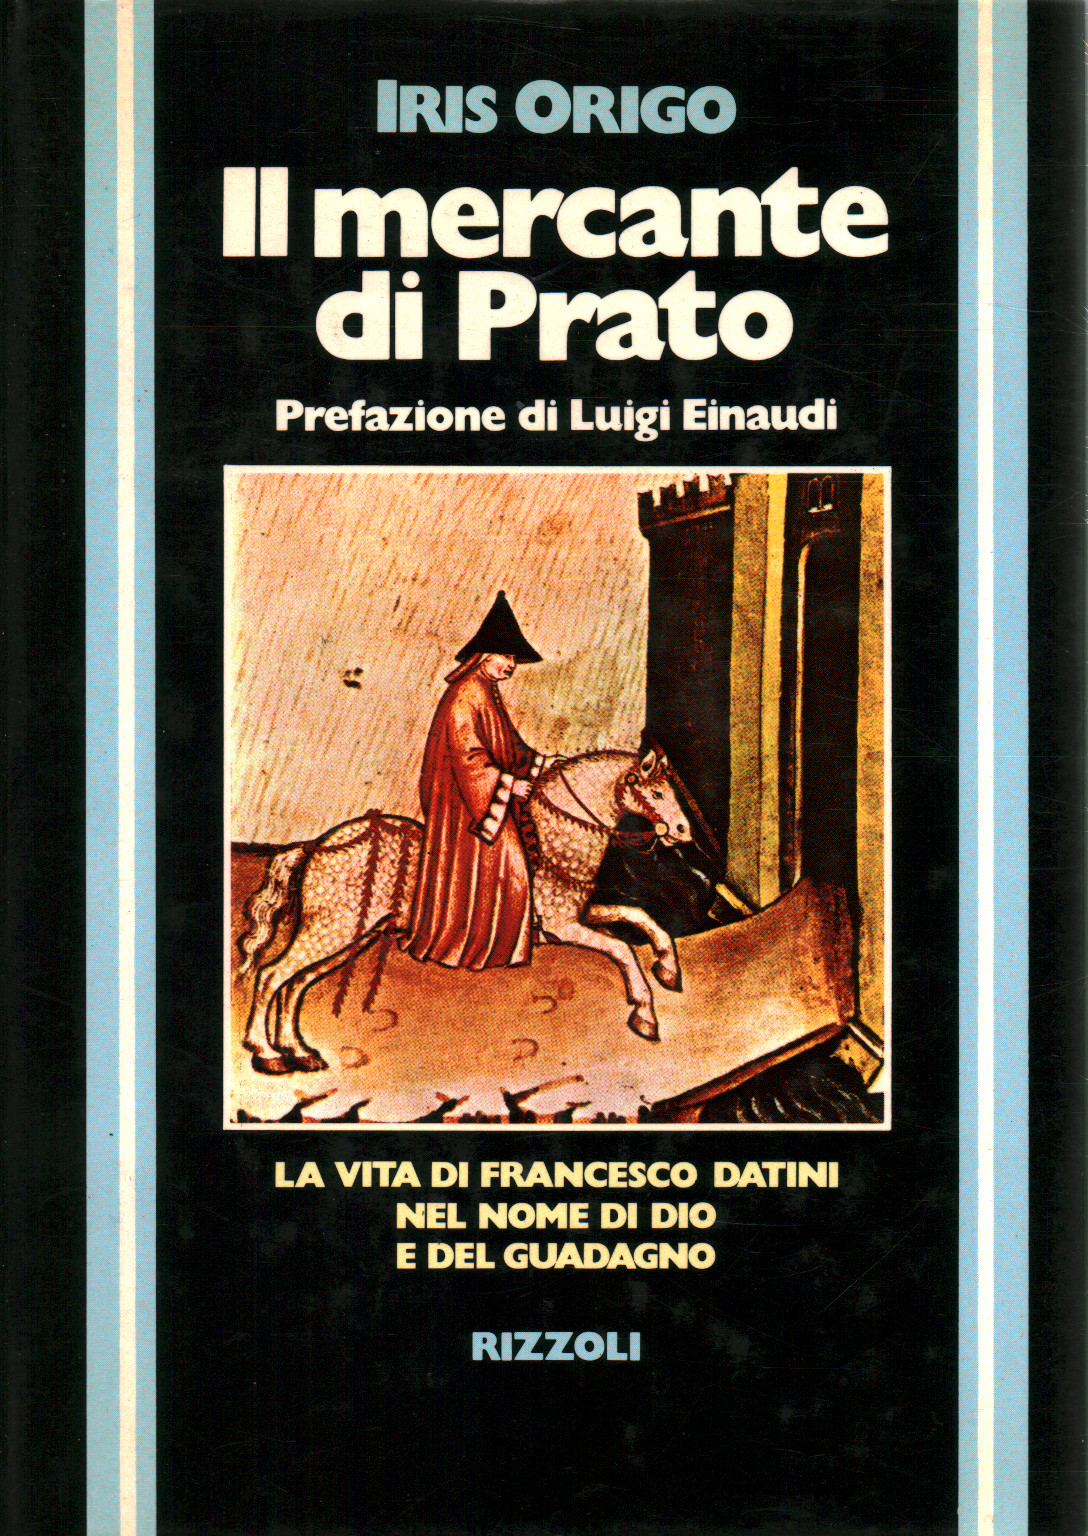 El comerciante de Prato, s.a.